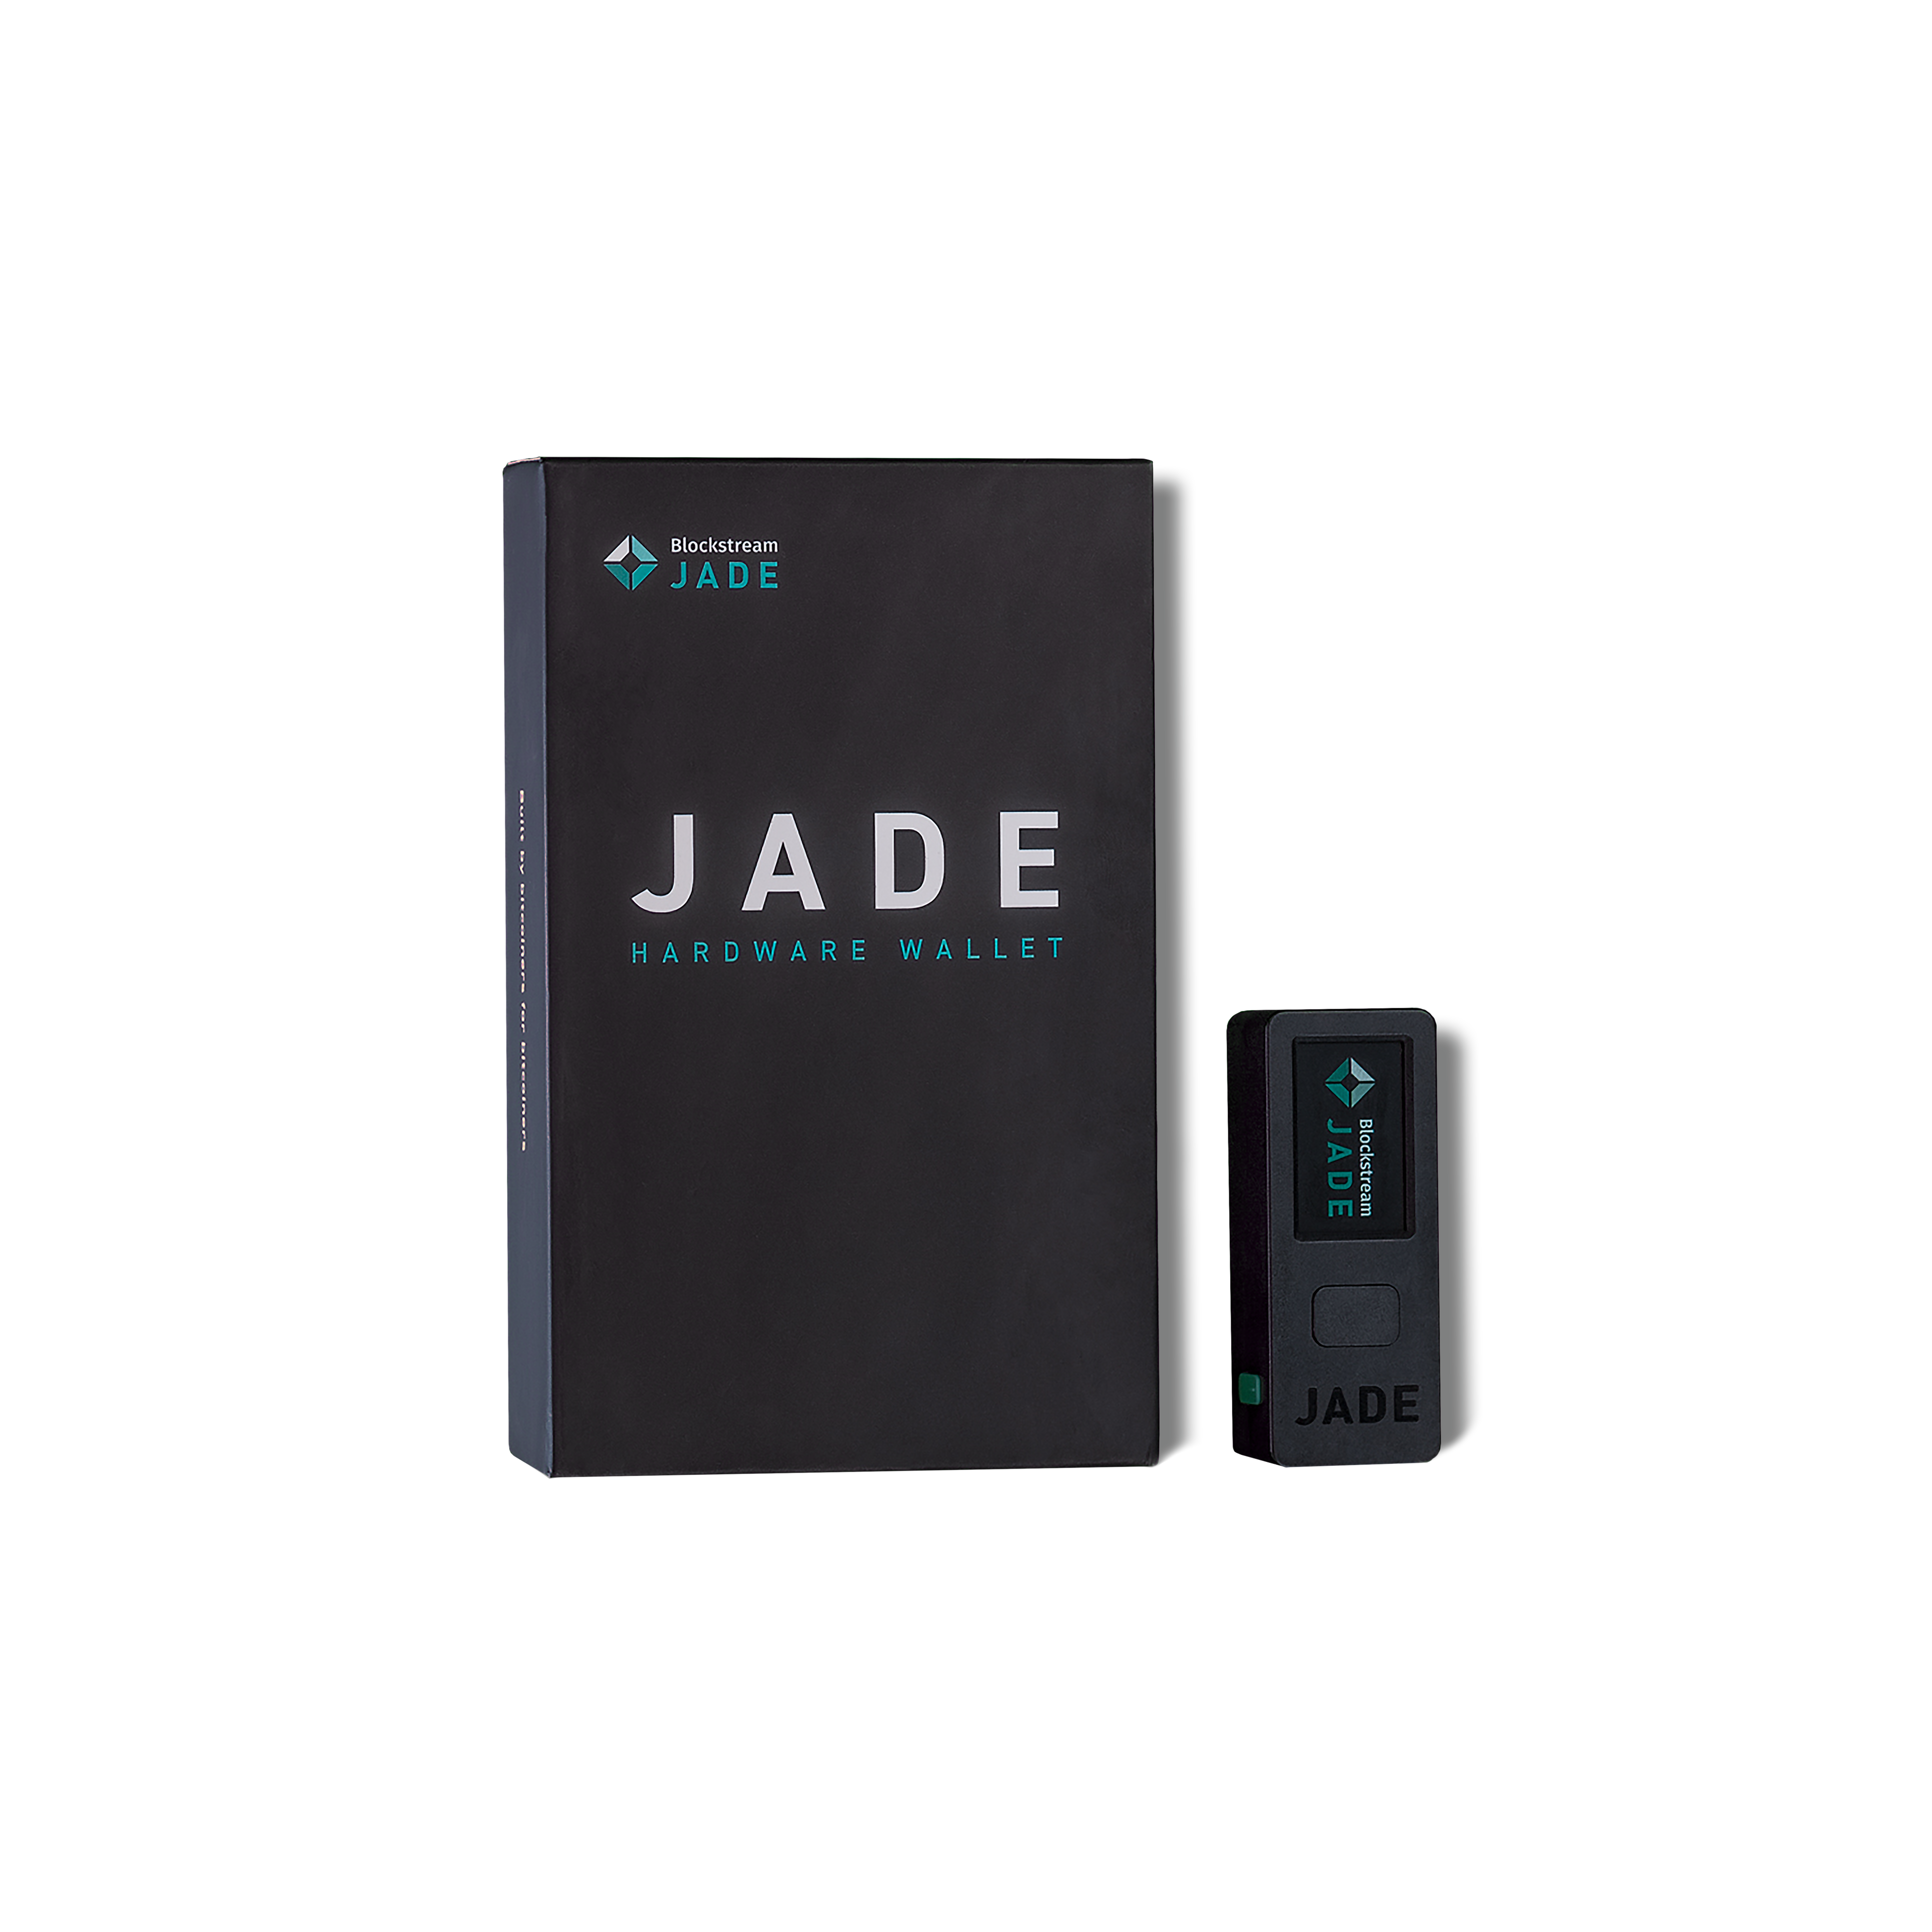 BlockStream JADE, Green Wallet